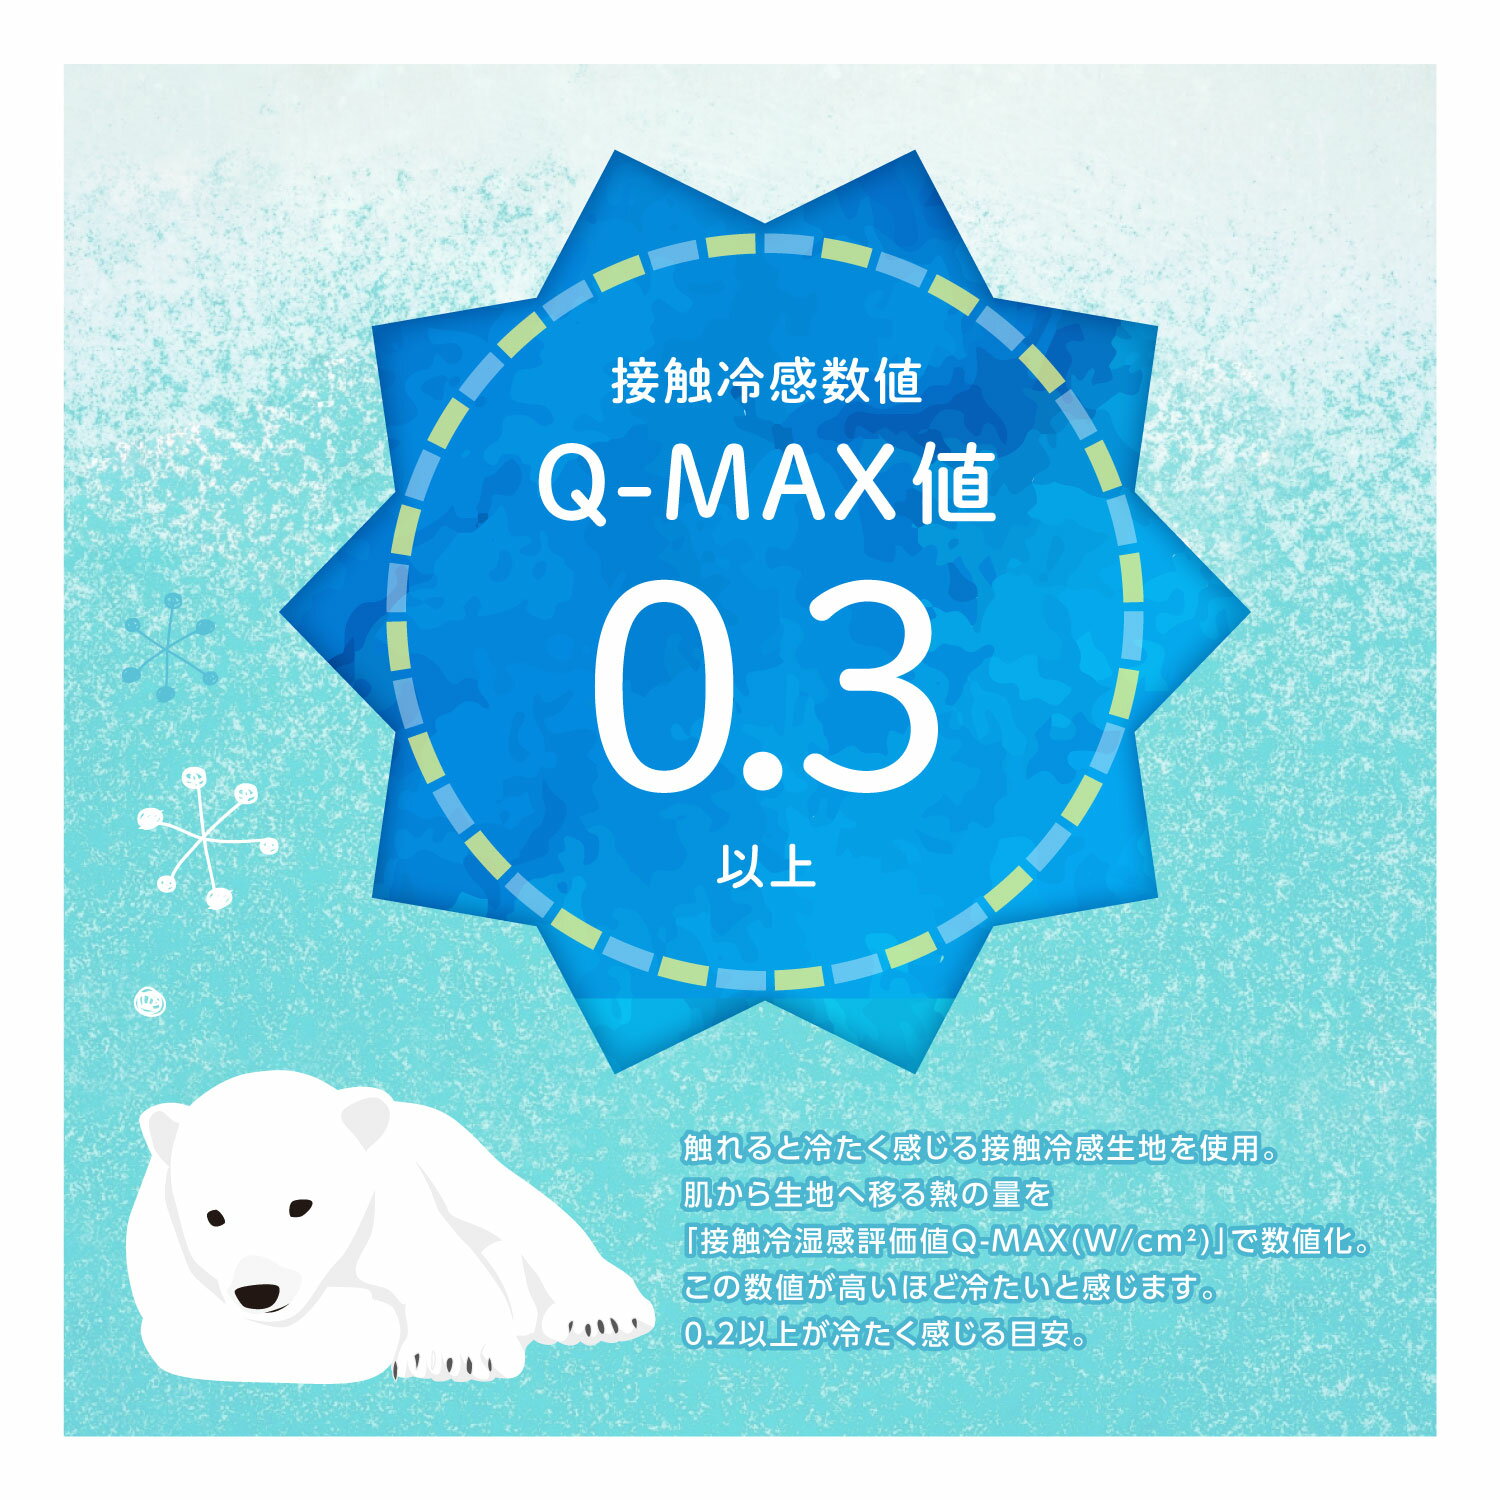 【1枚入り】MA-09 マスク UVカット 防臭 吸水速乾 帯電防止 洗える 接触冷感 冷感 防塵 抗菌 抗ウイルス キッズ メンズ レディース 大人 子供 小さめ 不織布マスク 5S 4S 3S S M L LL 3L Q-MAX値0.3 日本製